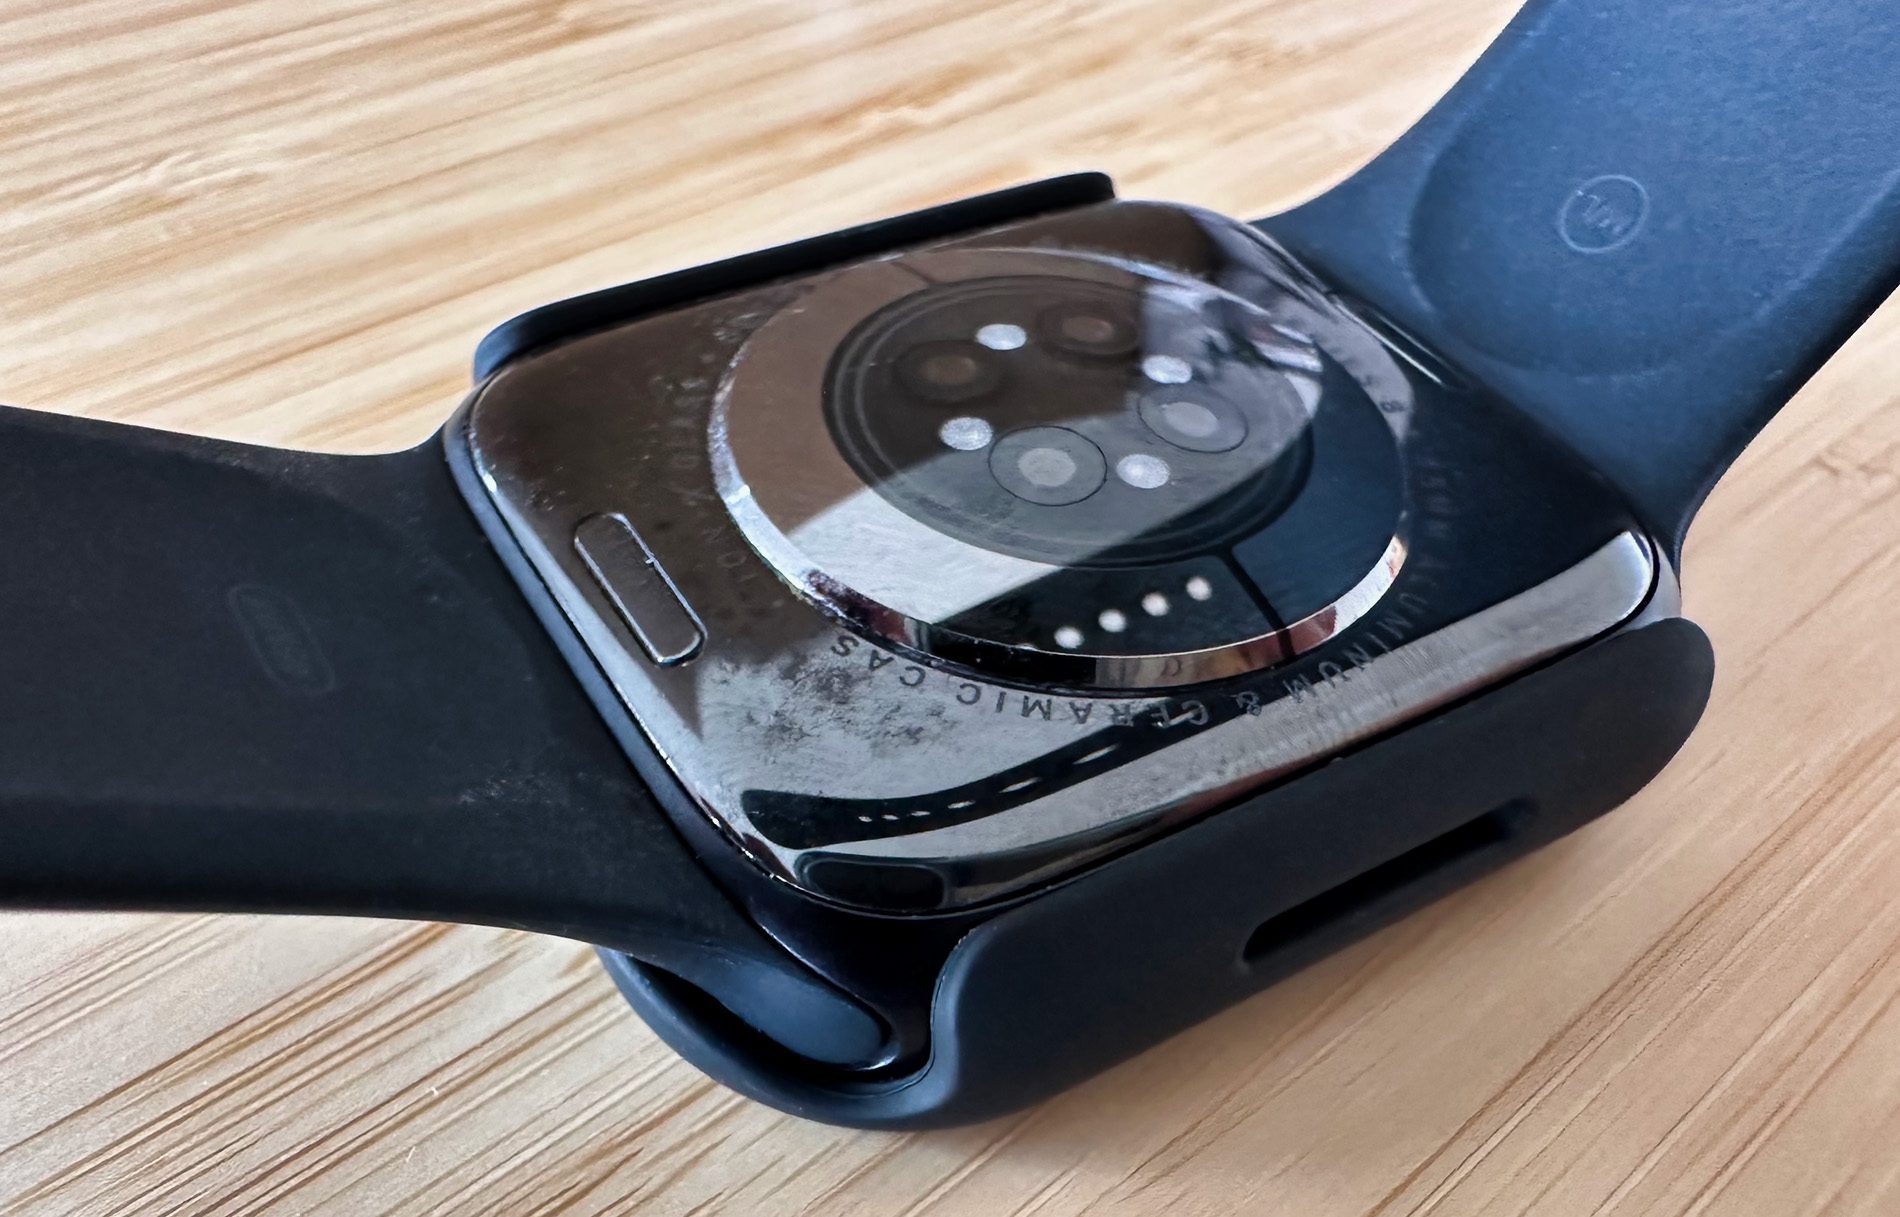 Hier sieht man die Unterseite der Apple Watch mit aufgesetzter Hülle.